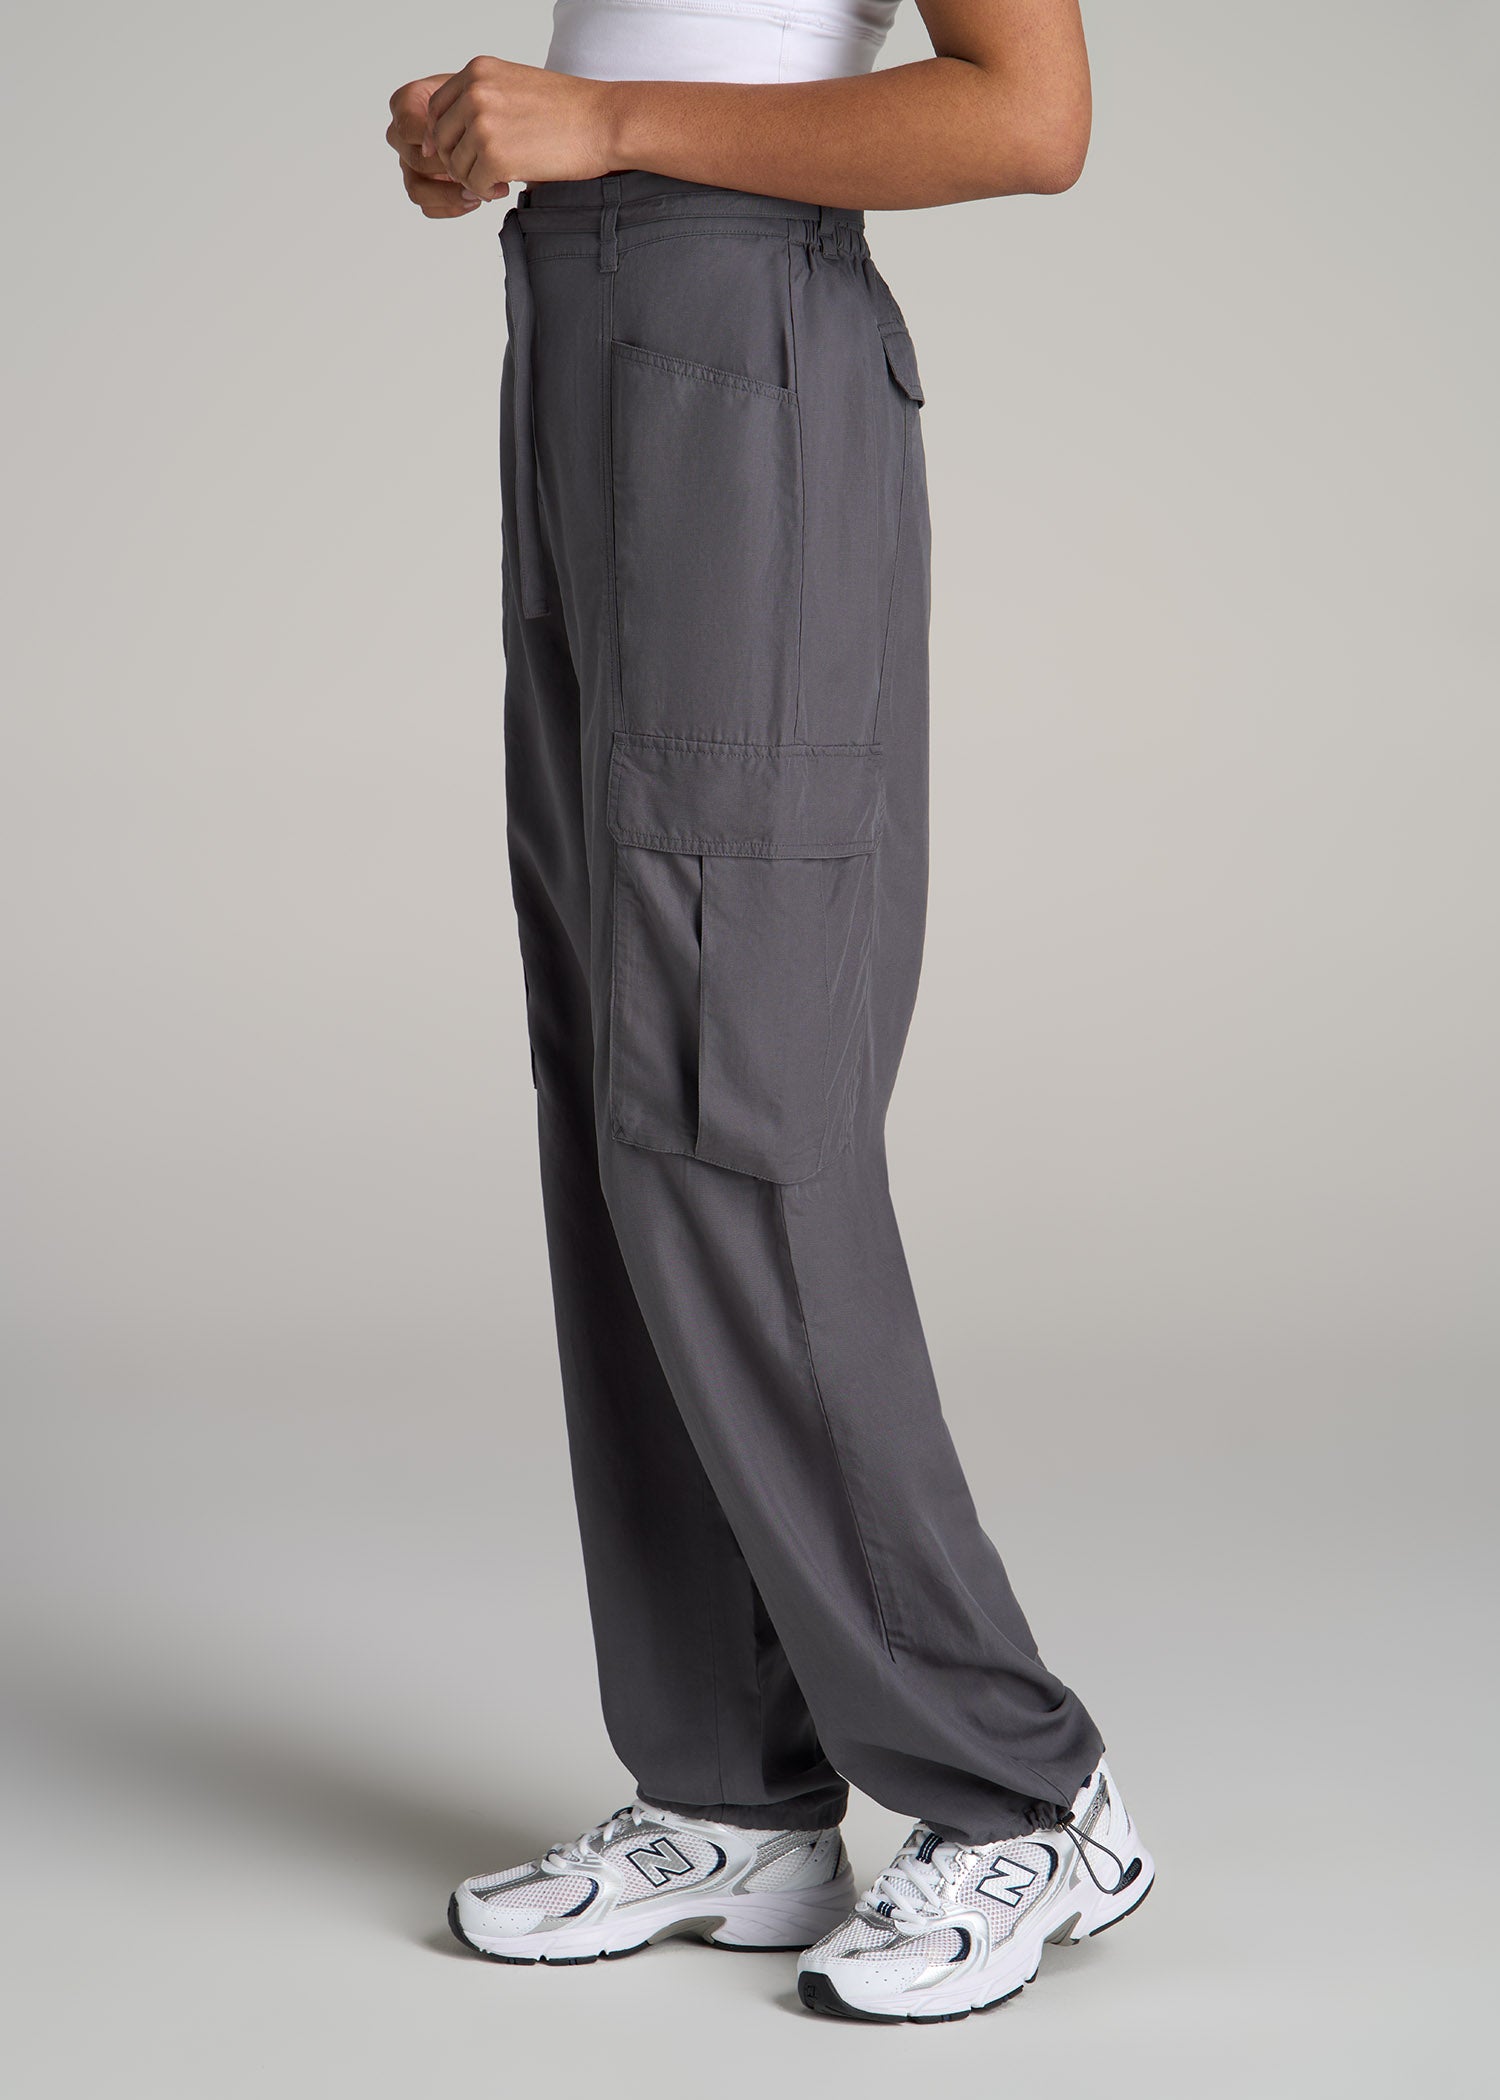 Women's Adjustable Rise Cargo Parachute Pants